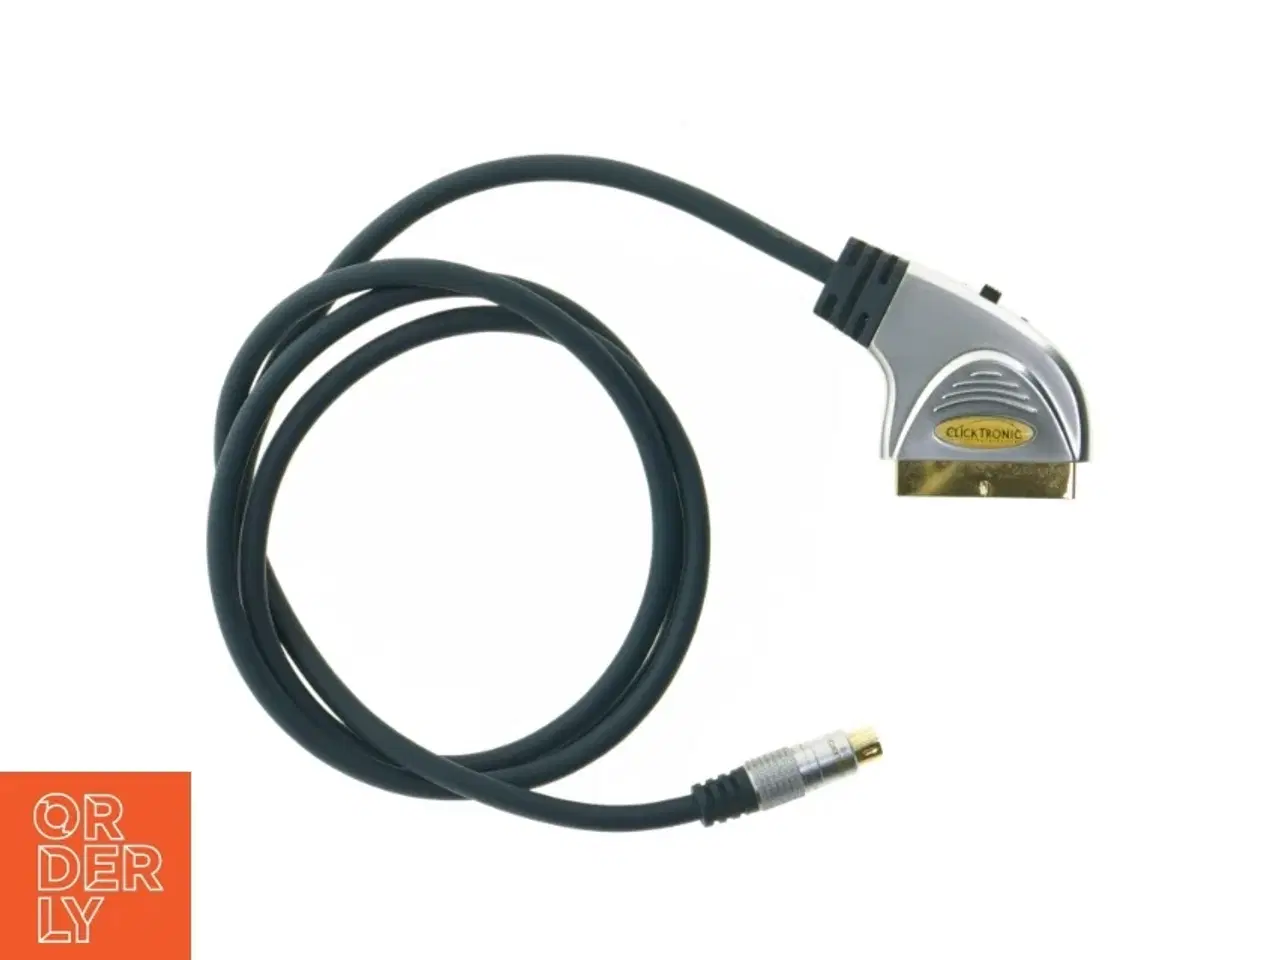 Billede 2 - Clicktronic Scart-kabel med S-video stik fra Clicktronic (str. 155 cm)